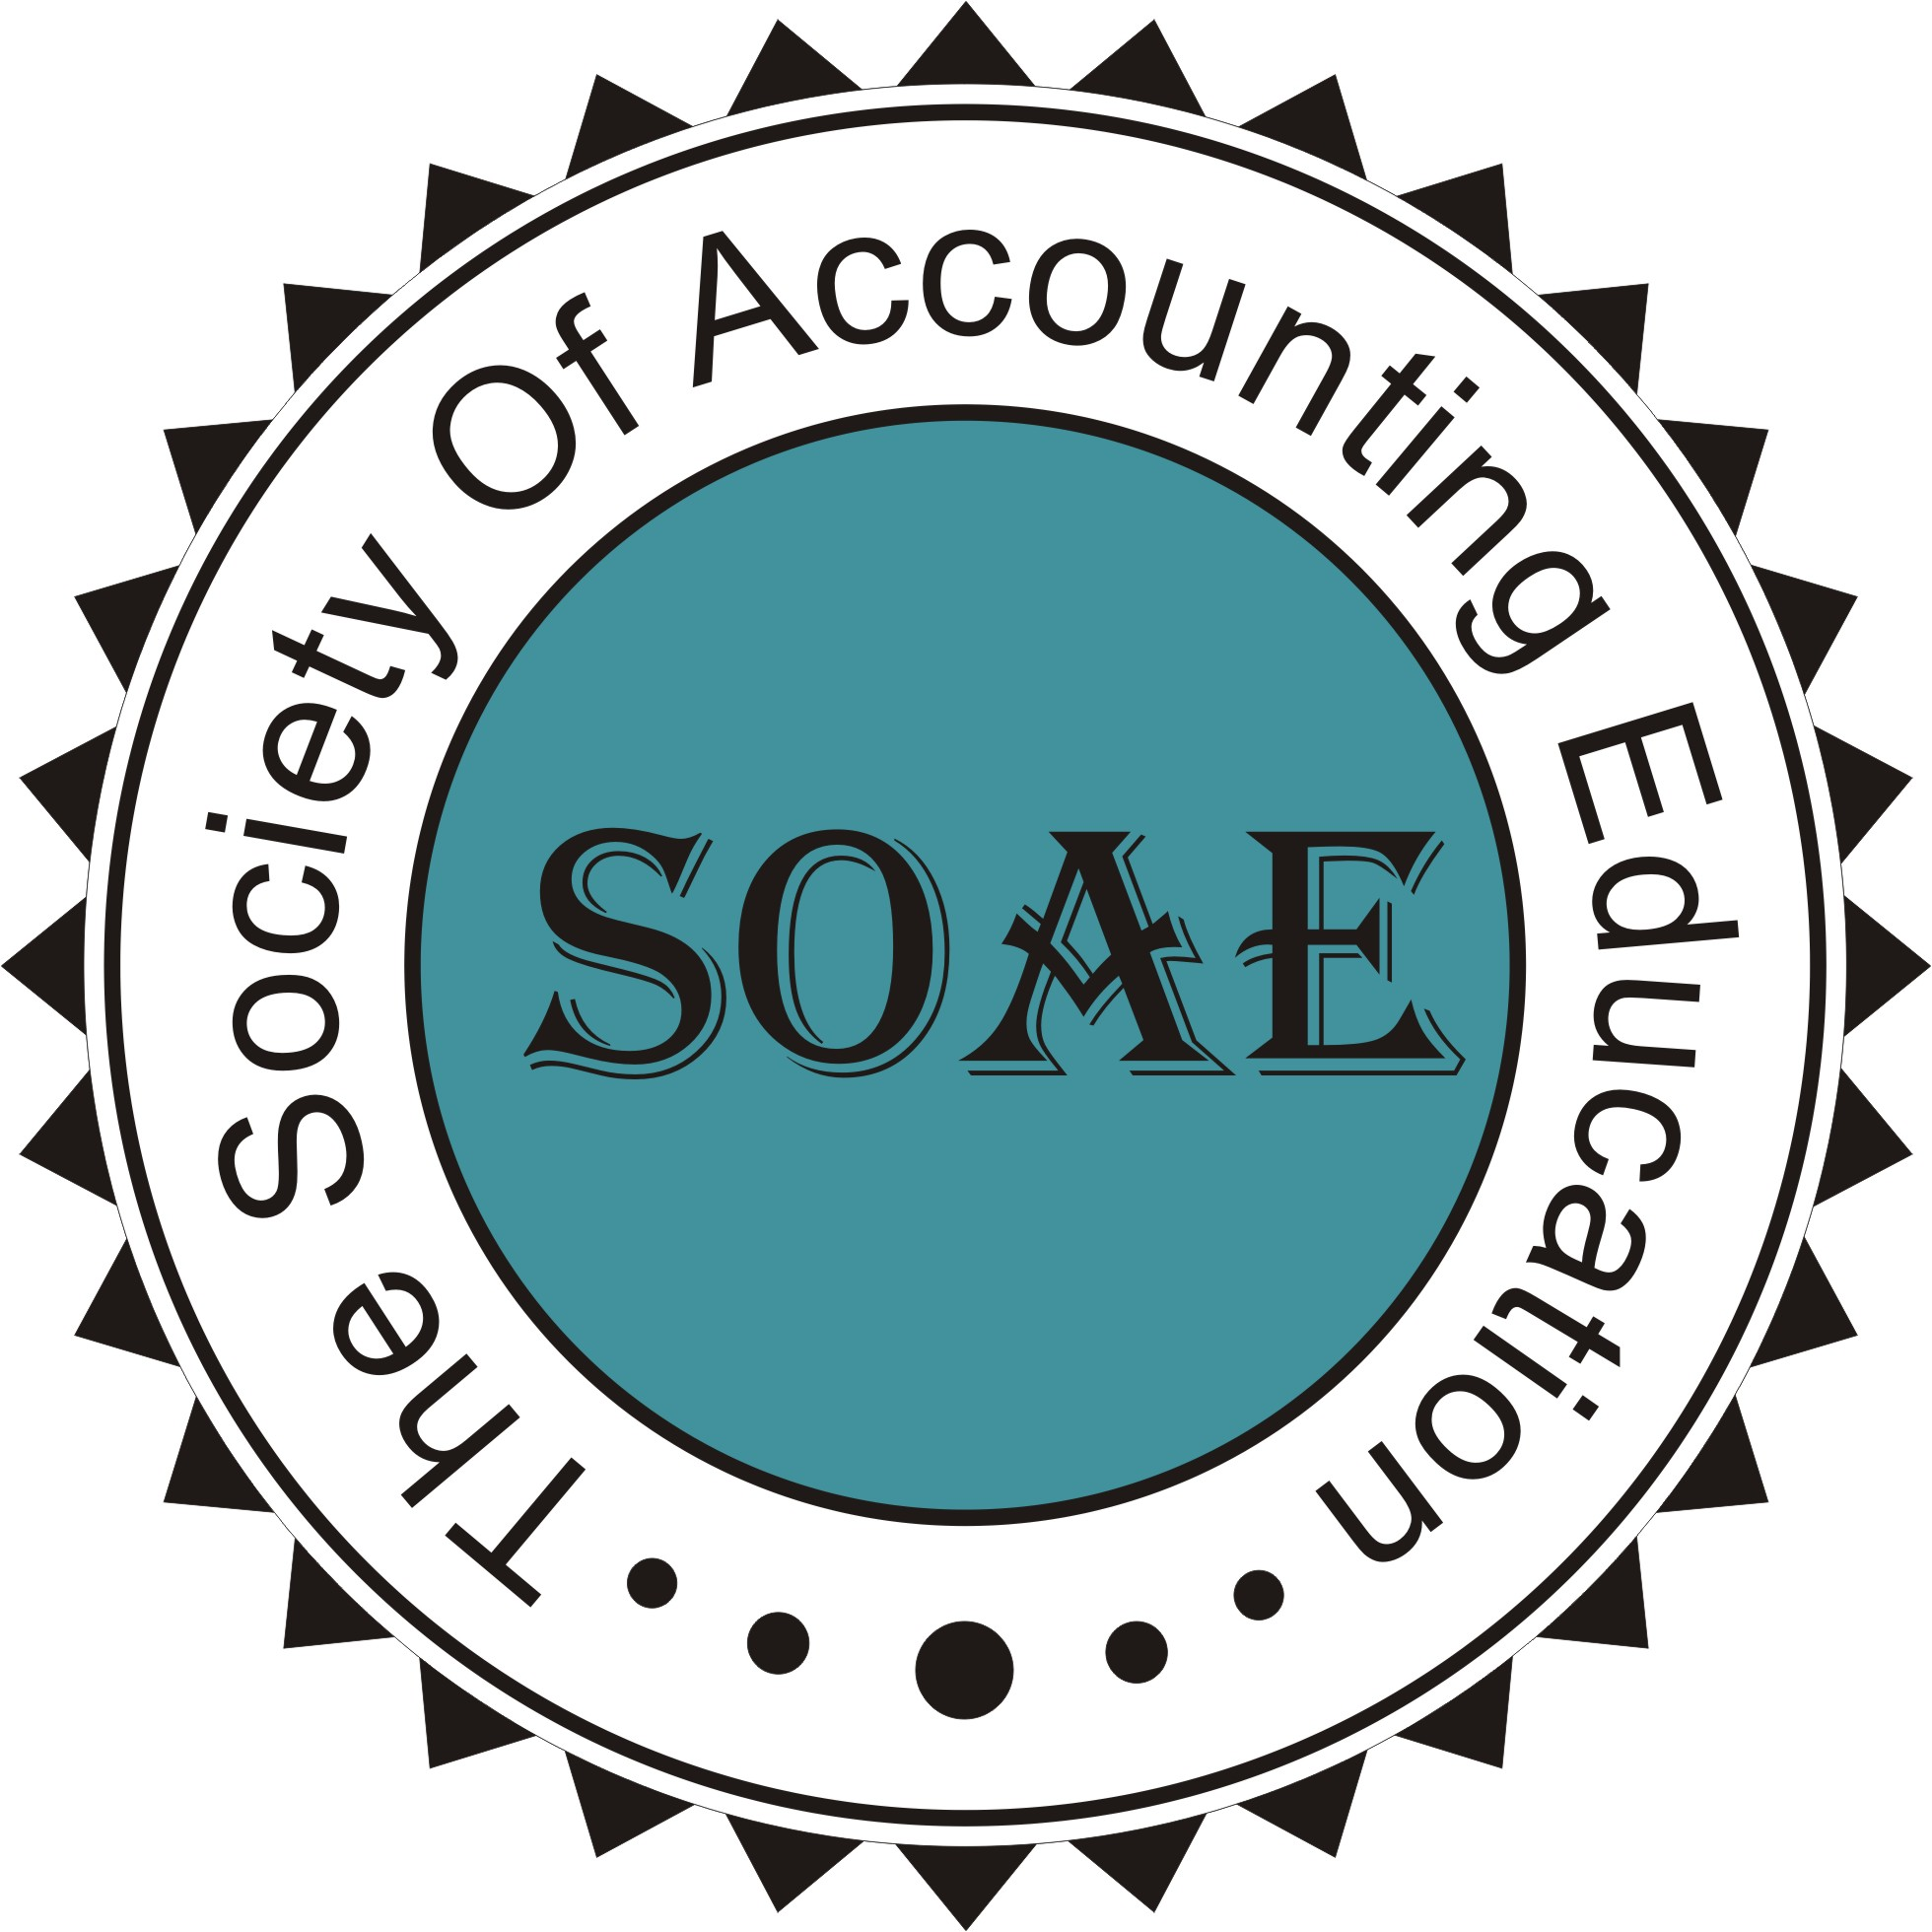 SOAE : The Society of Accounting Education (SOAE)